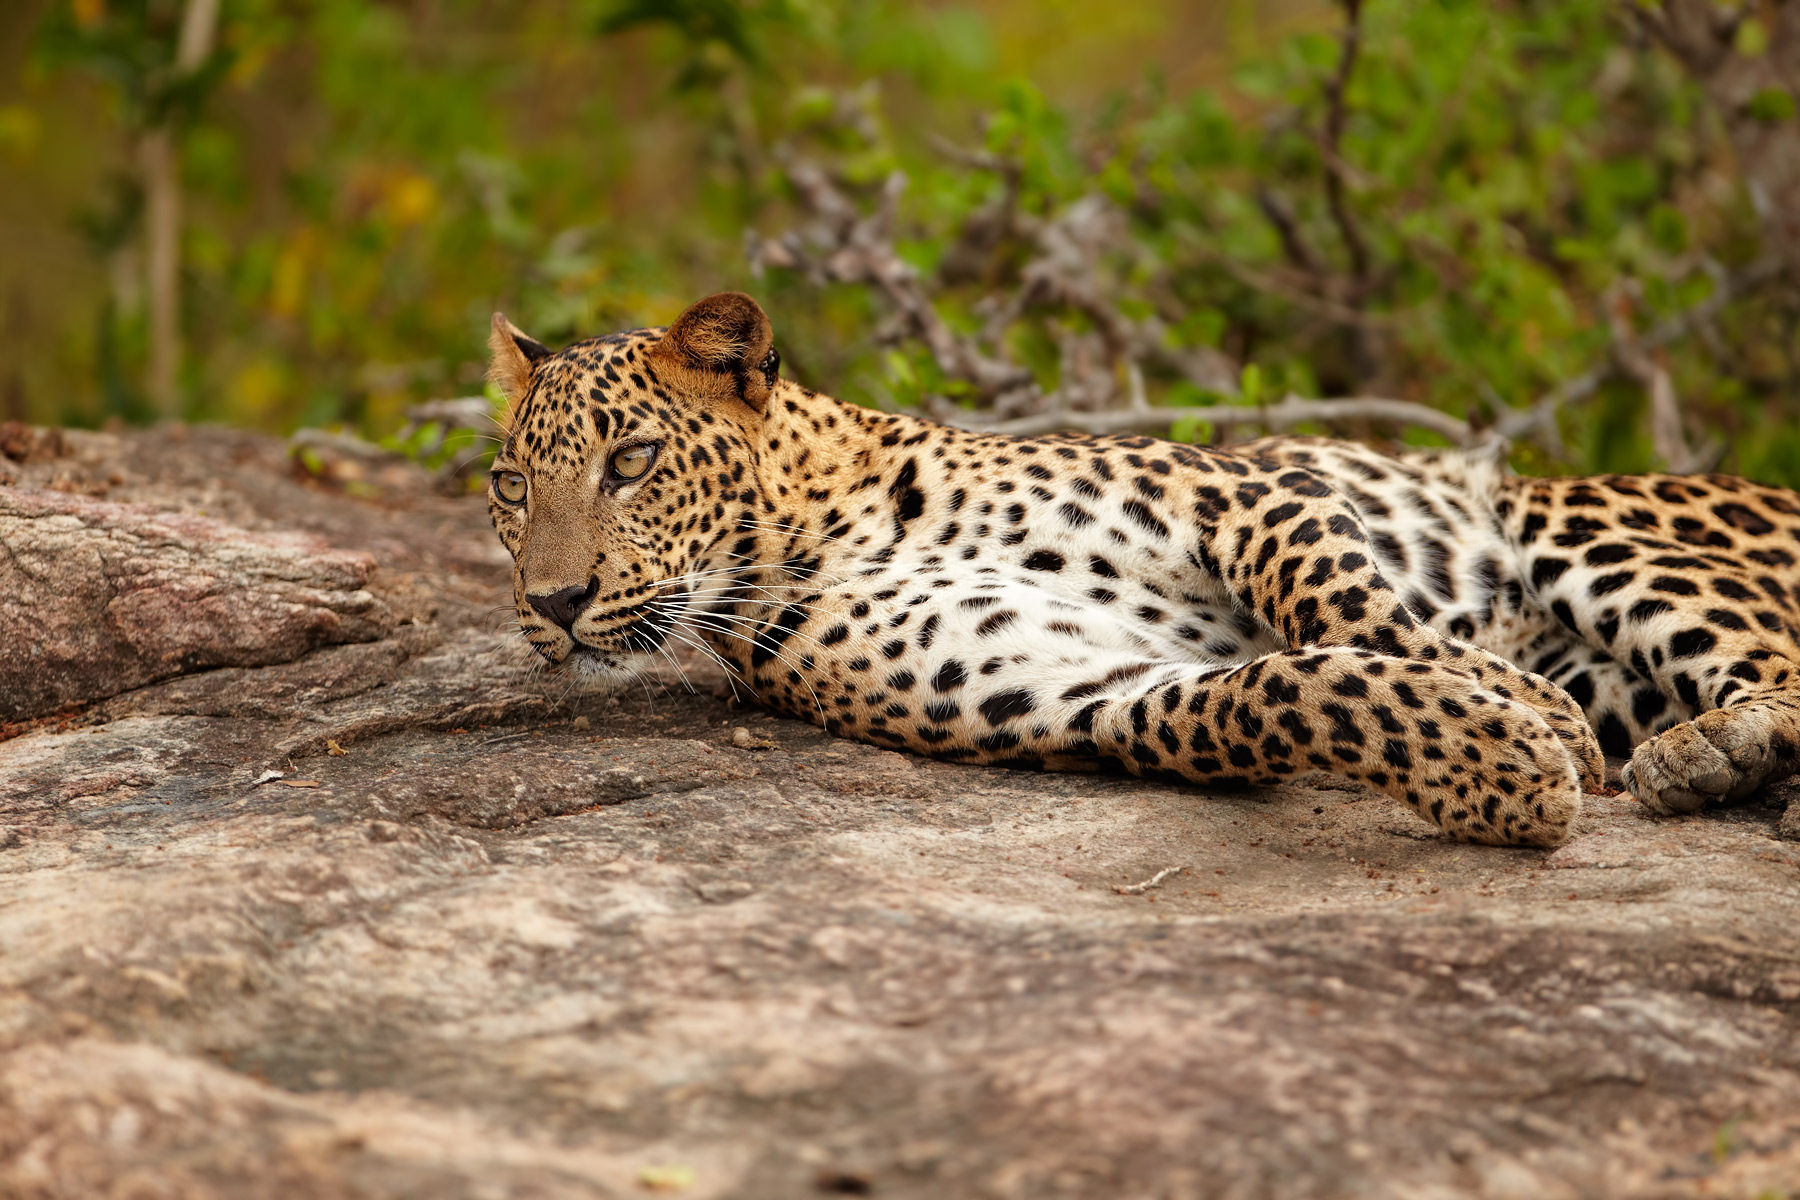 Sri Lanka Leopard